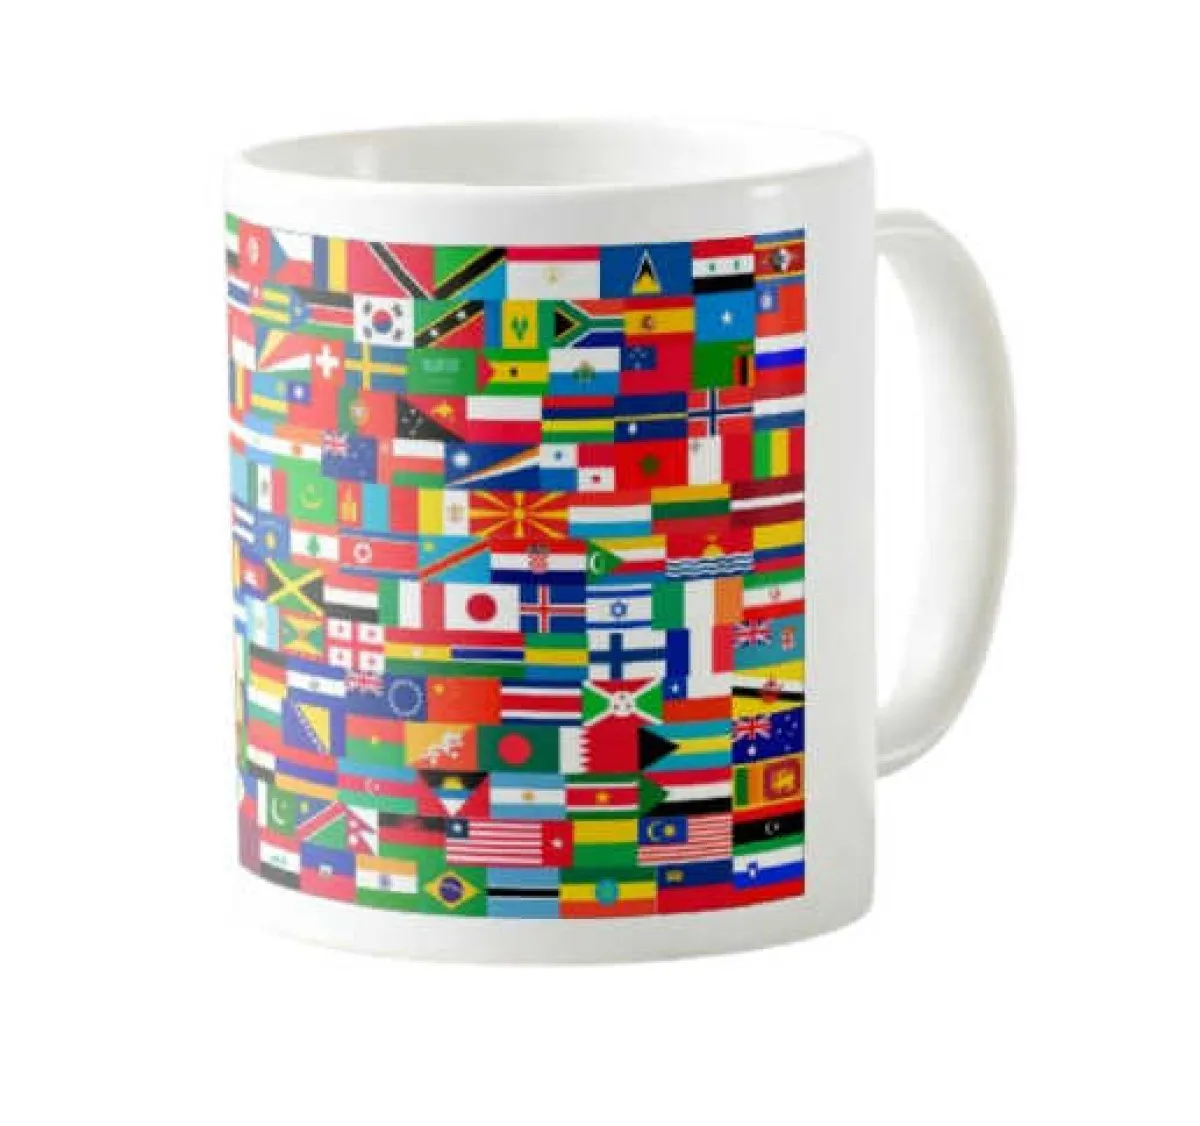 Mug - Coffee mug - Mug with the flags of the world